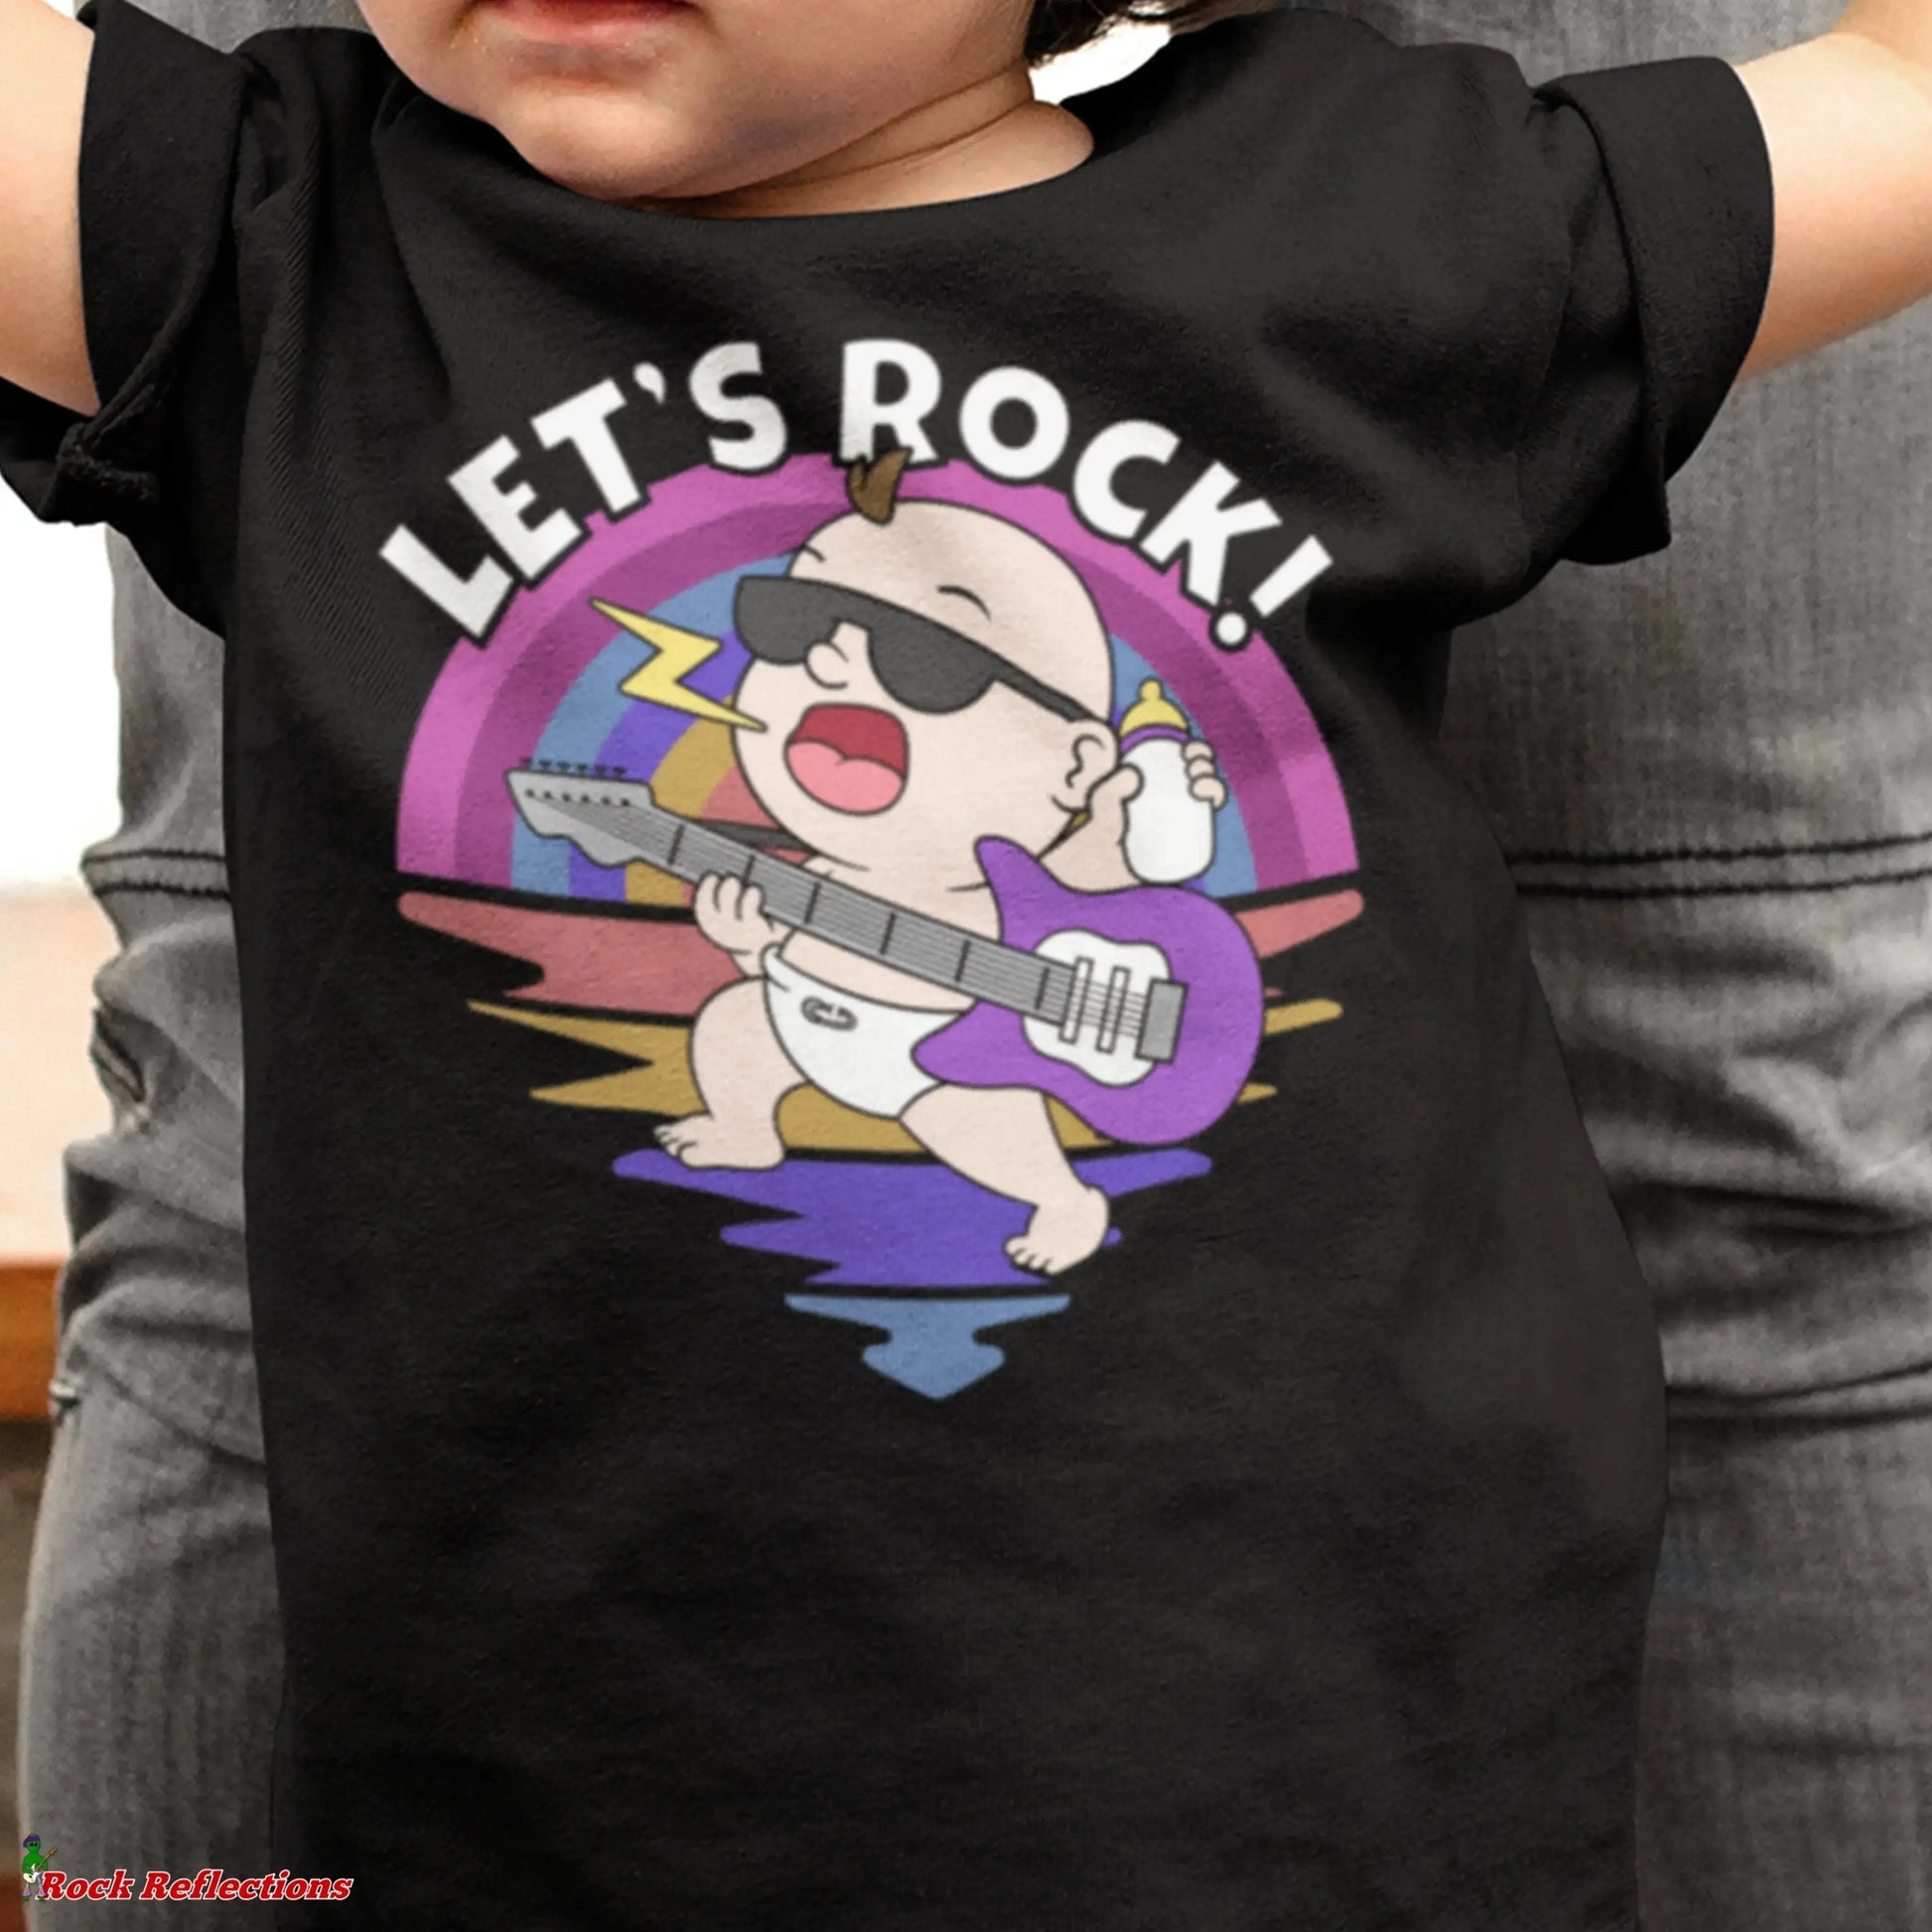 Let's Rock Baby SPOD